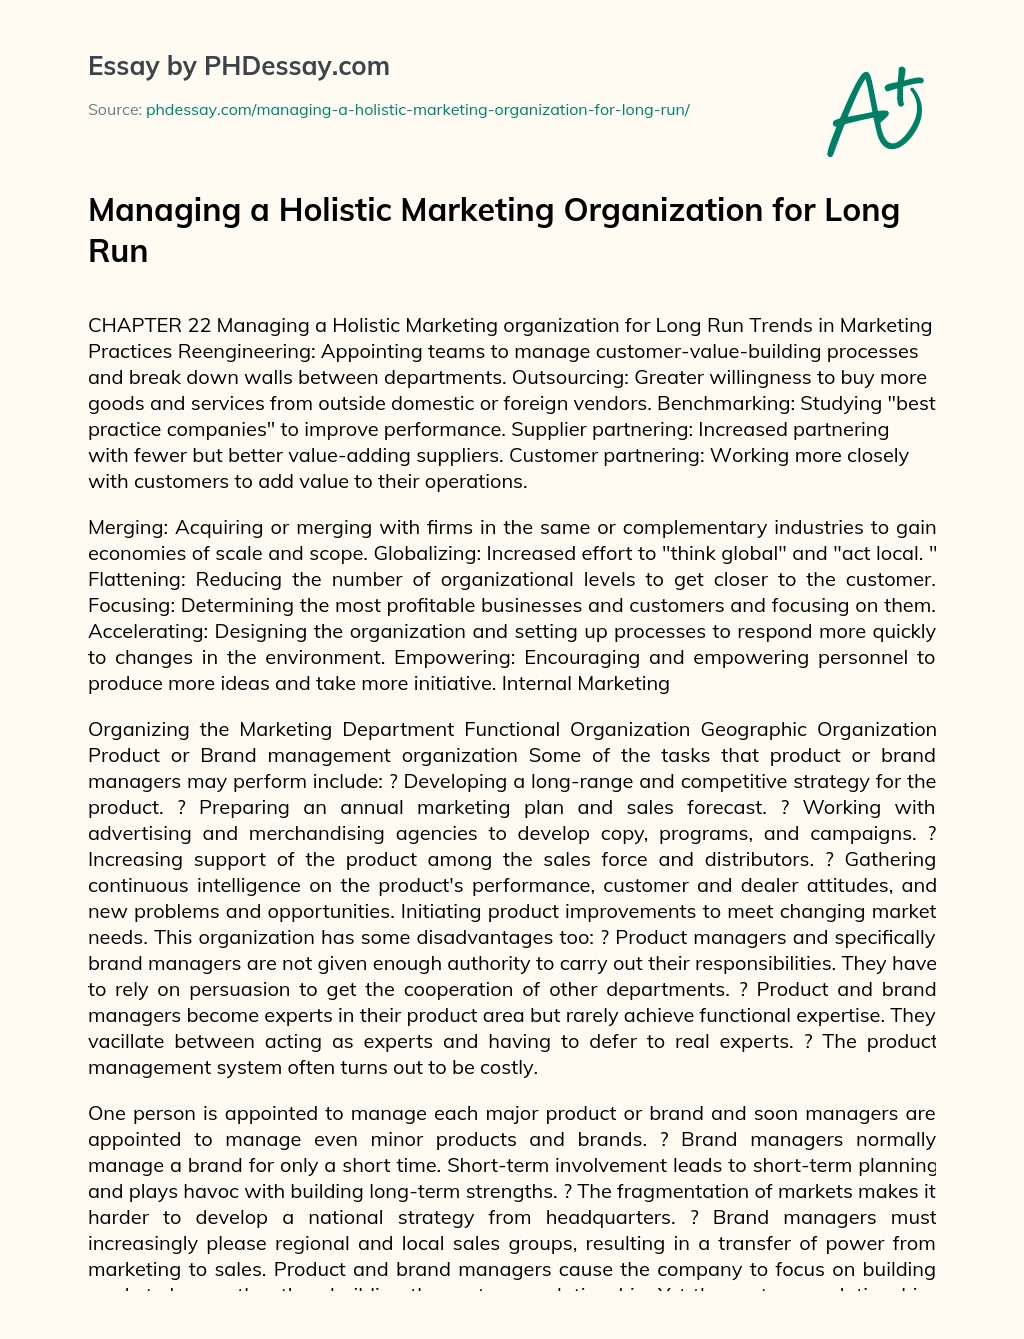 Managing a Holistic Marketing Organization for Long Run essay